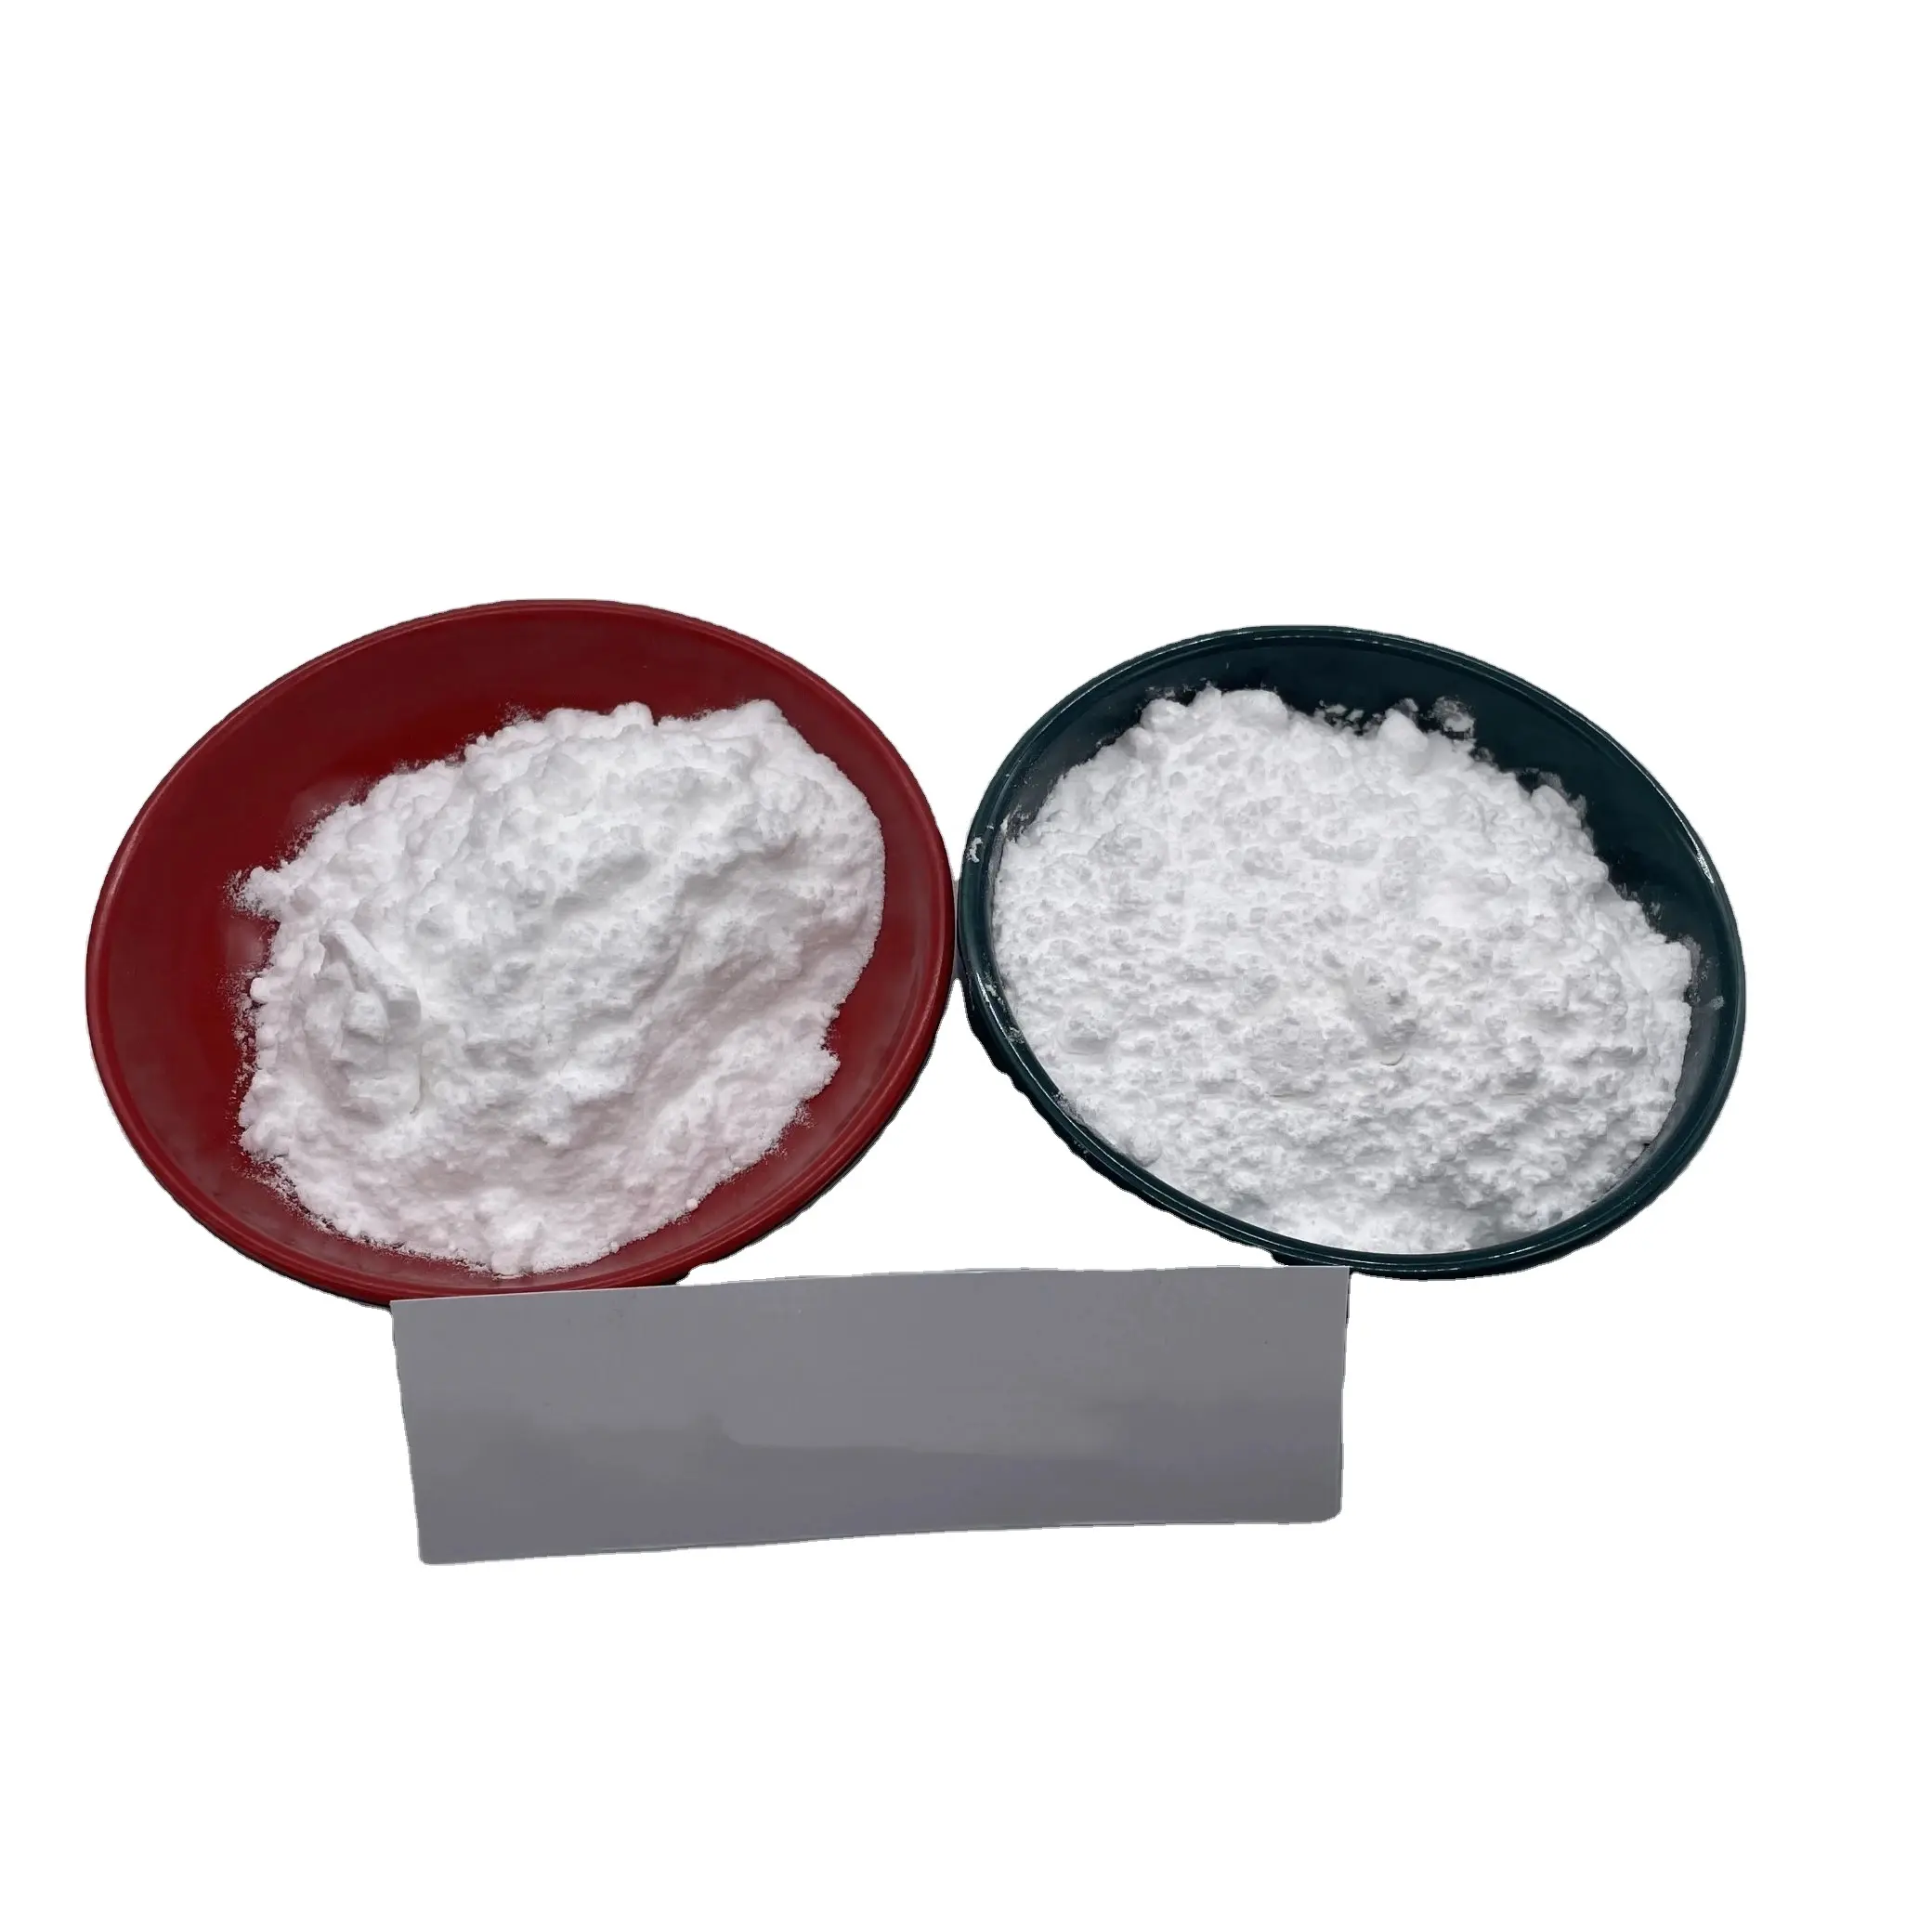 Venta superior Envío rápido Surfactante ácido láurico CAS 143-07-7 99% Ácido láurico al mejor precio